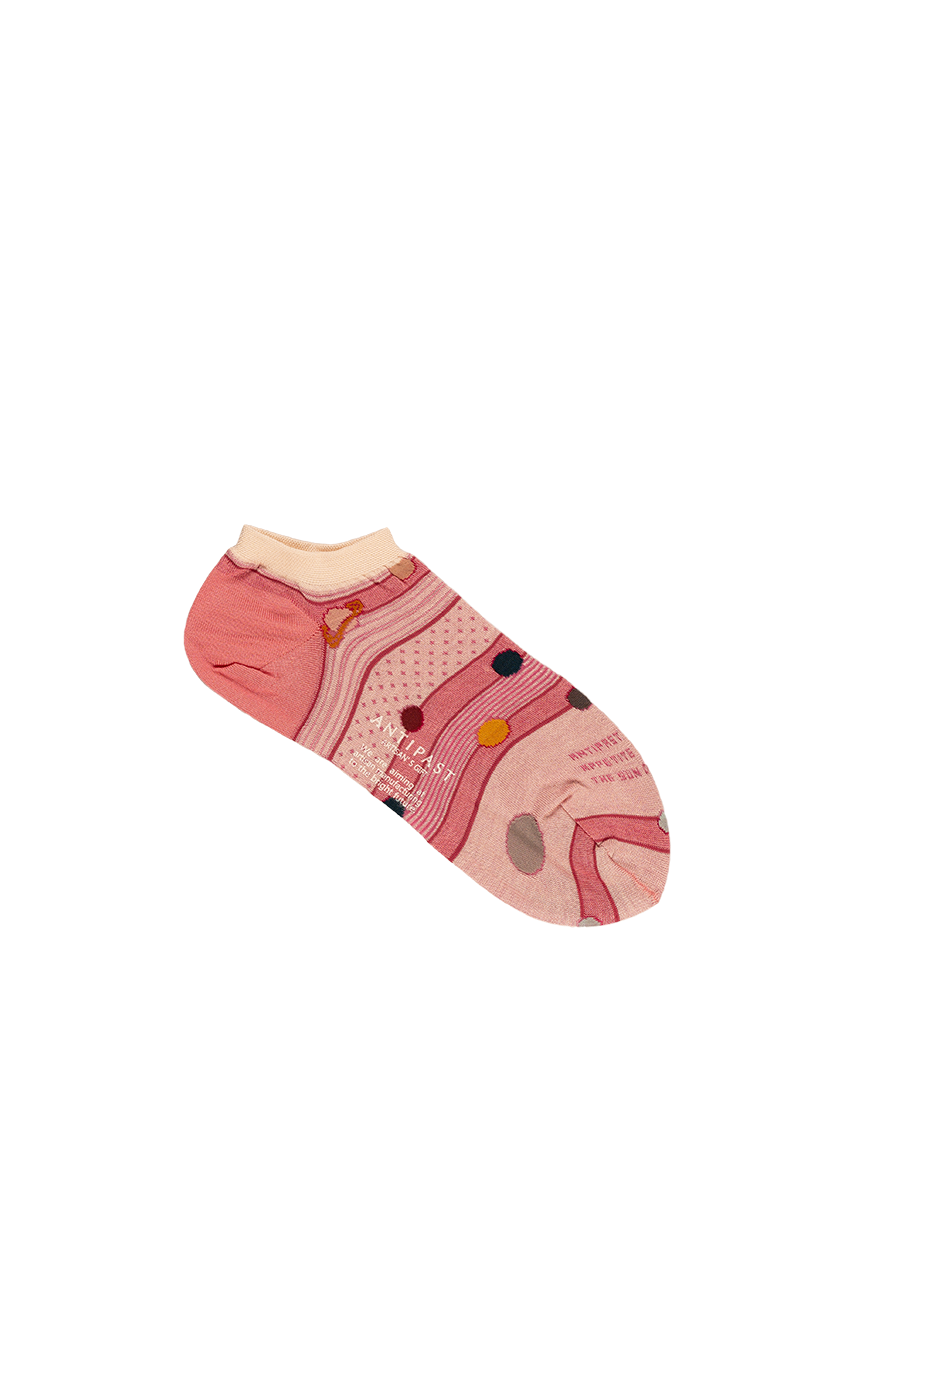 Antipast Women's Planet Orbit Cover Socks